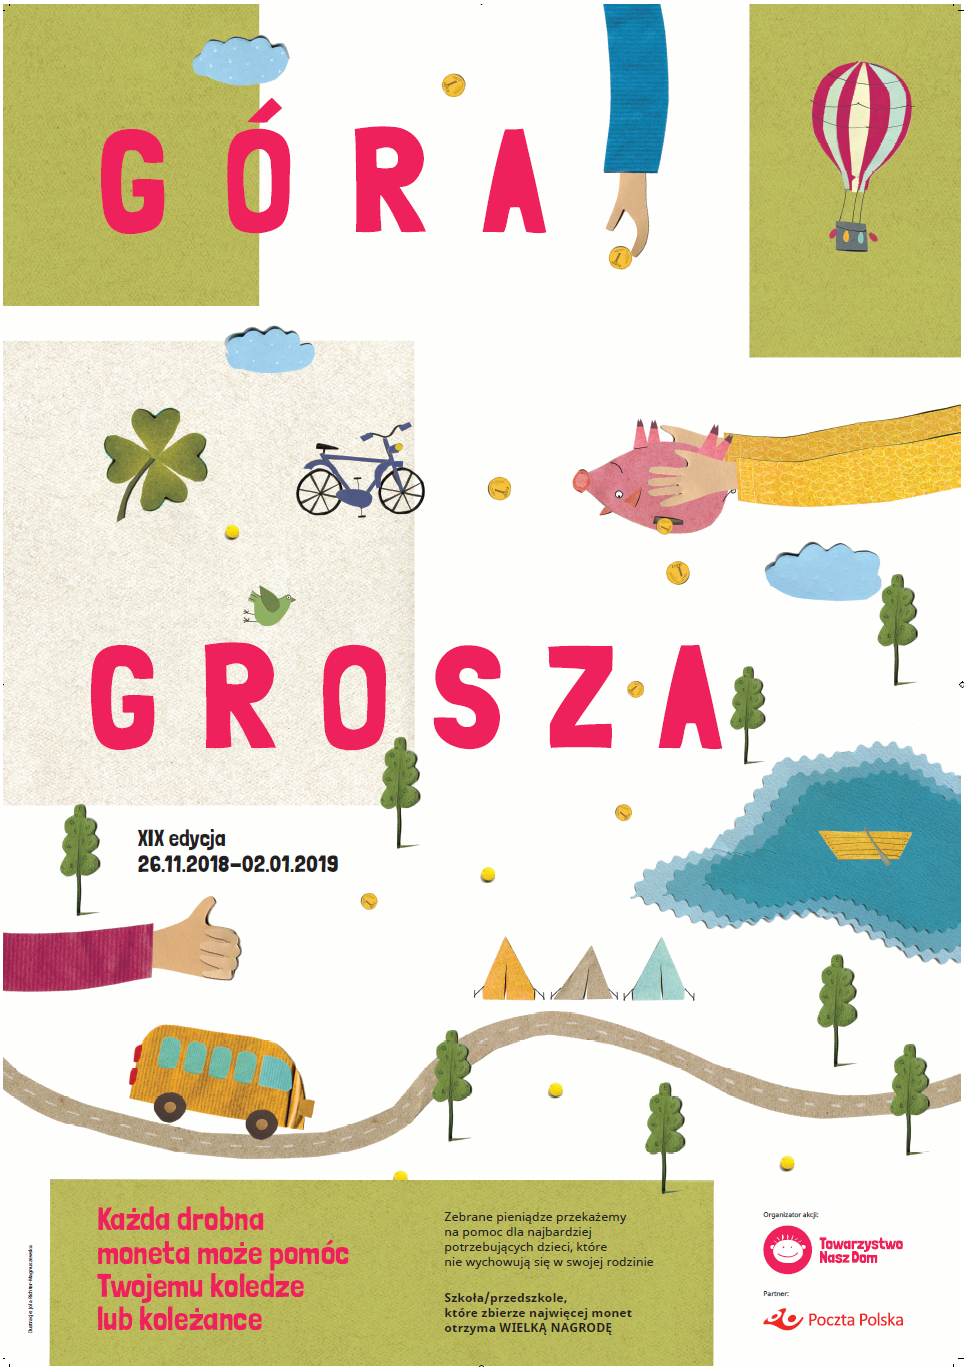 Plakat informujący o XIX edycji akcji charytatywnej "Góra grosza"